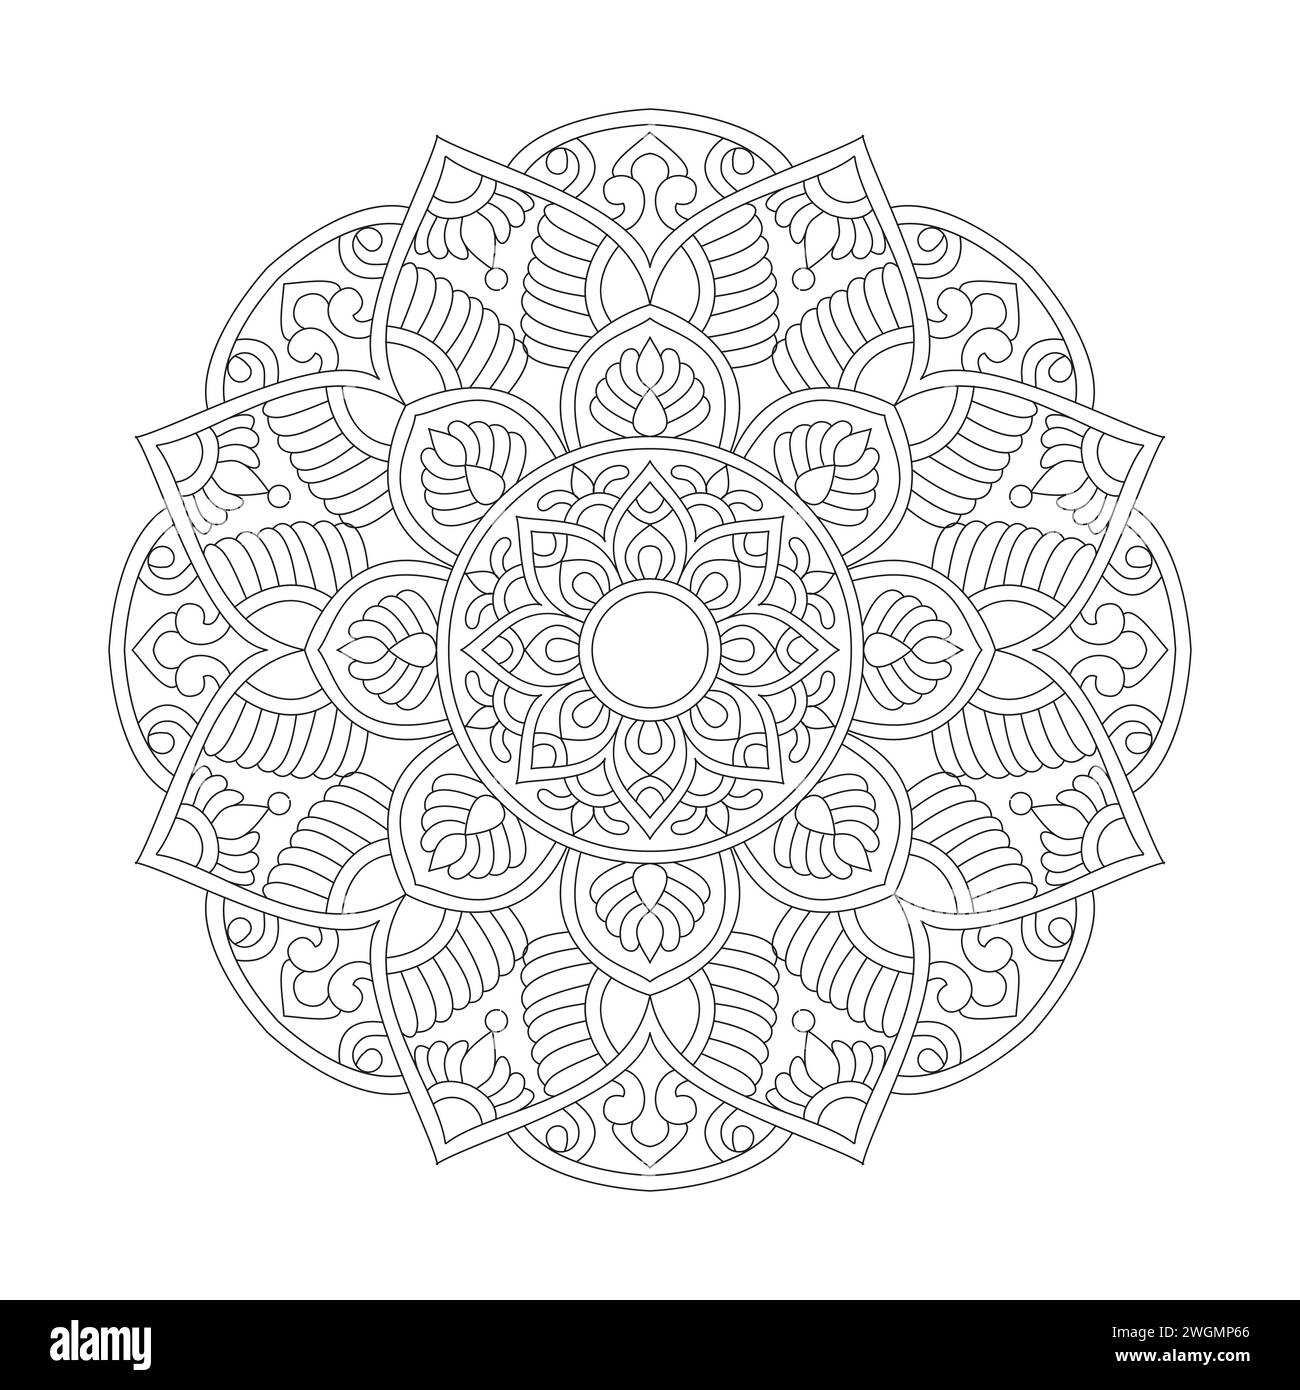 Pagina dei libri coloranti Mandala per l'interno del libro KDP con manindfulness radiale. Petali tranquilli, capacità di rilassarsi, esperienze cerebrali, paradiso armonioso, pace Illustrazione Vettoriale